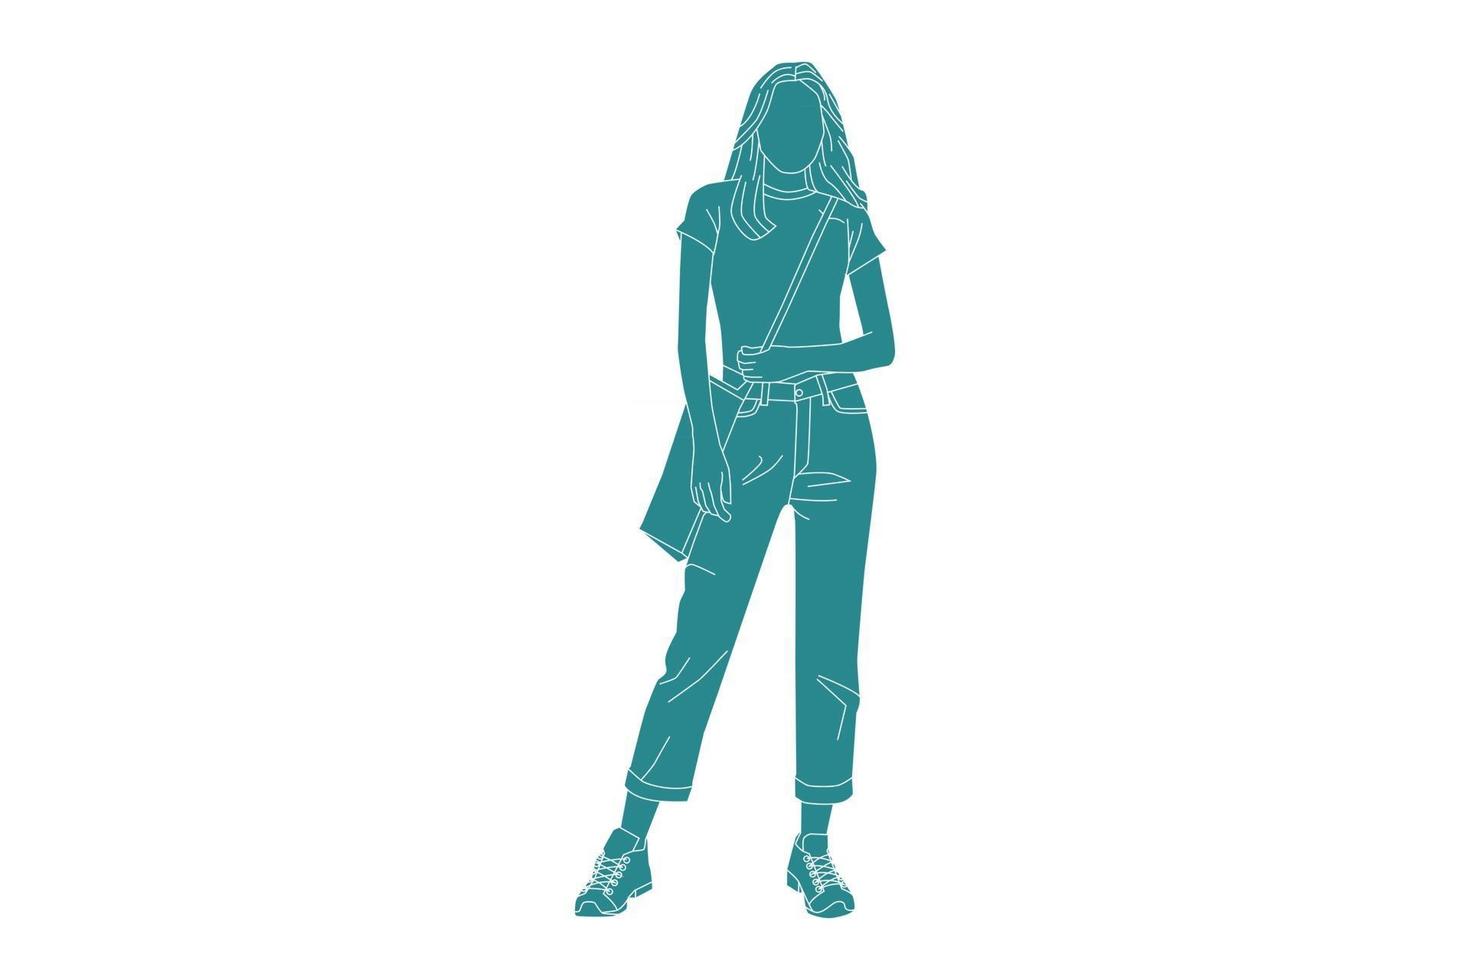 Vektor-Illustration der zufälligen Frau, die sich bereit macht, aufs College zu gehen, flacher Stil mit Umriss vektor